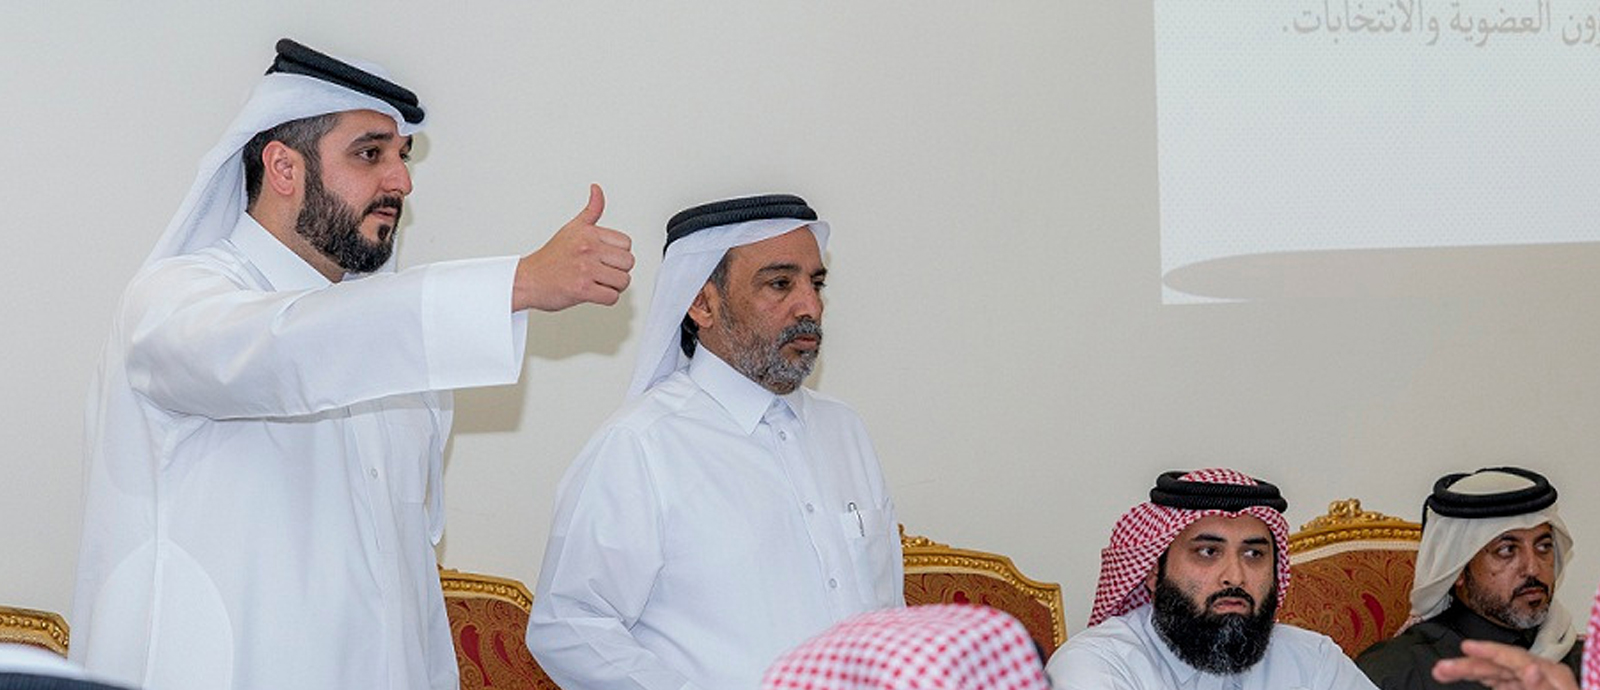 الشيخ محمد بن نواف رئيسا لنادي سباقات القدرة والتحمل القطري وضافي المري نائبا